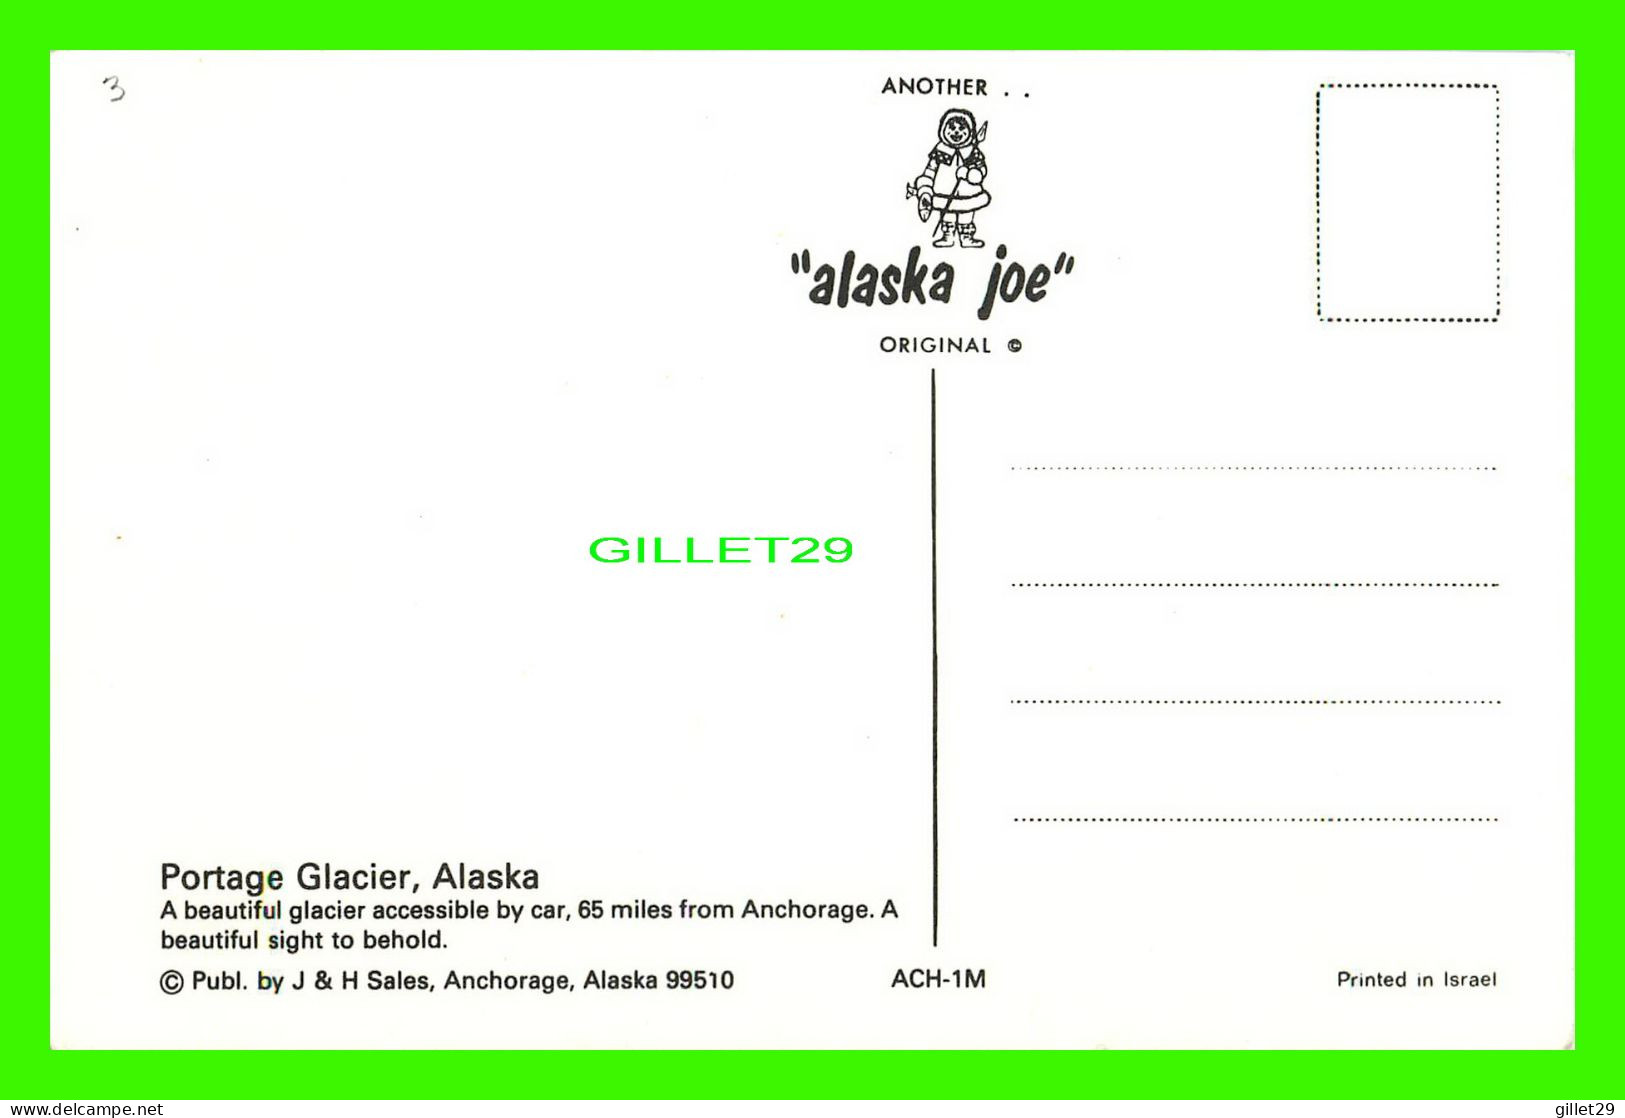 ANCHORAGE, ALASKA - PORTAGE GLACIER, 65 MILES FROM ANCHORAGE - ALASKA JOE - J & H SALES - - Anchorage